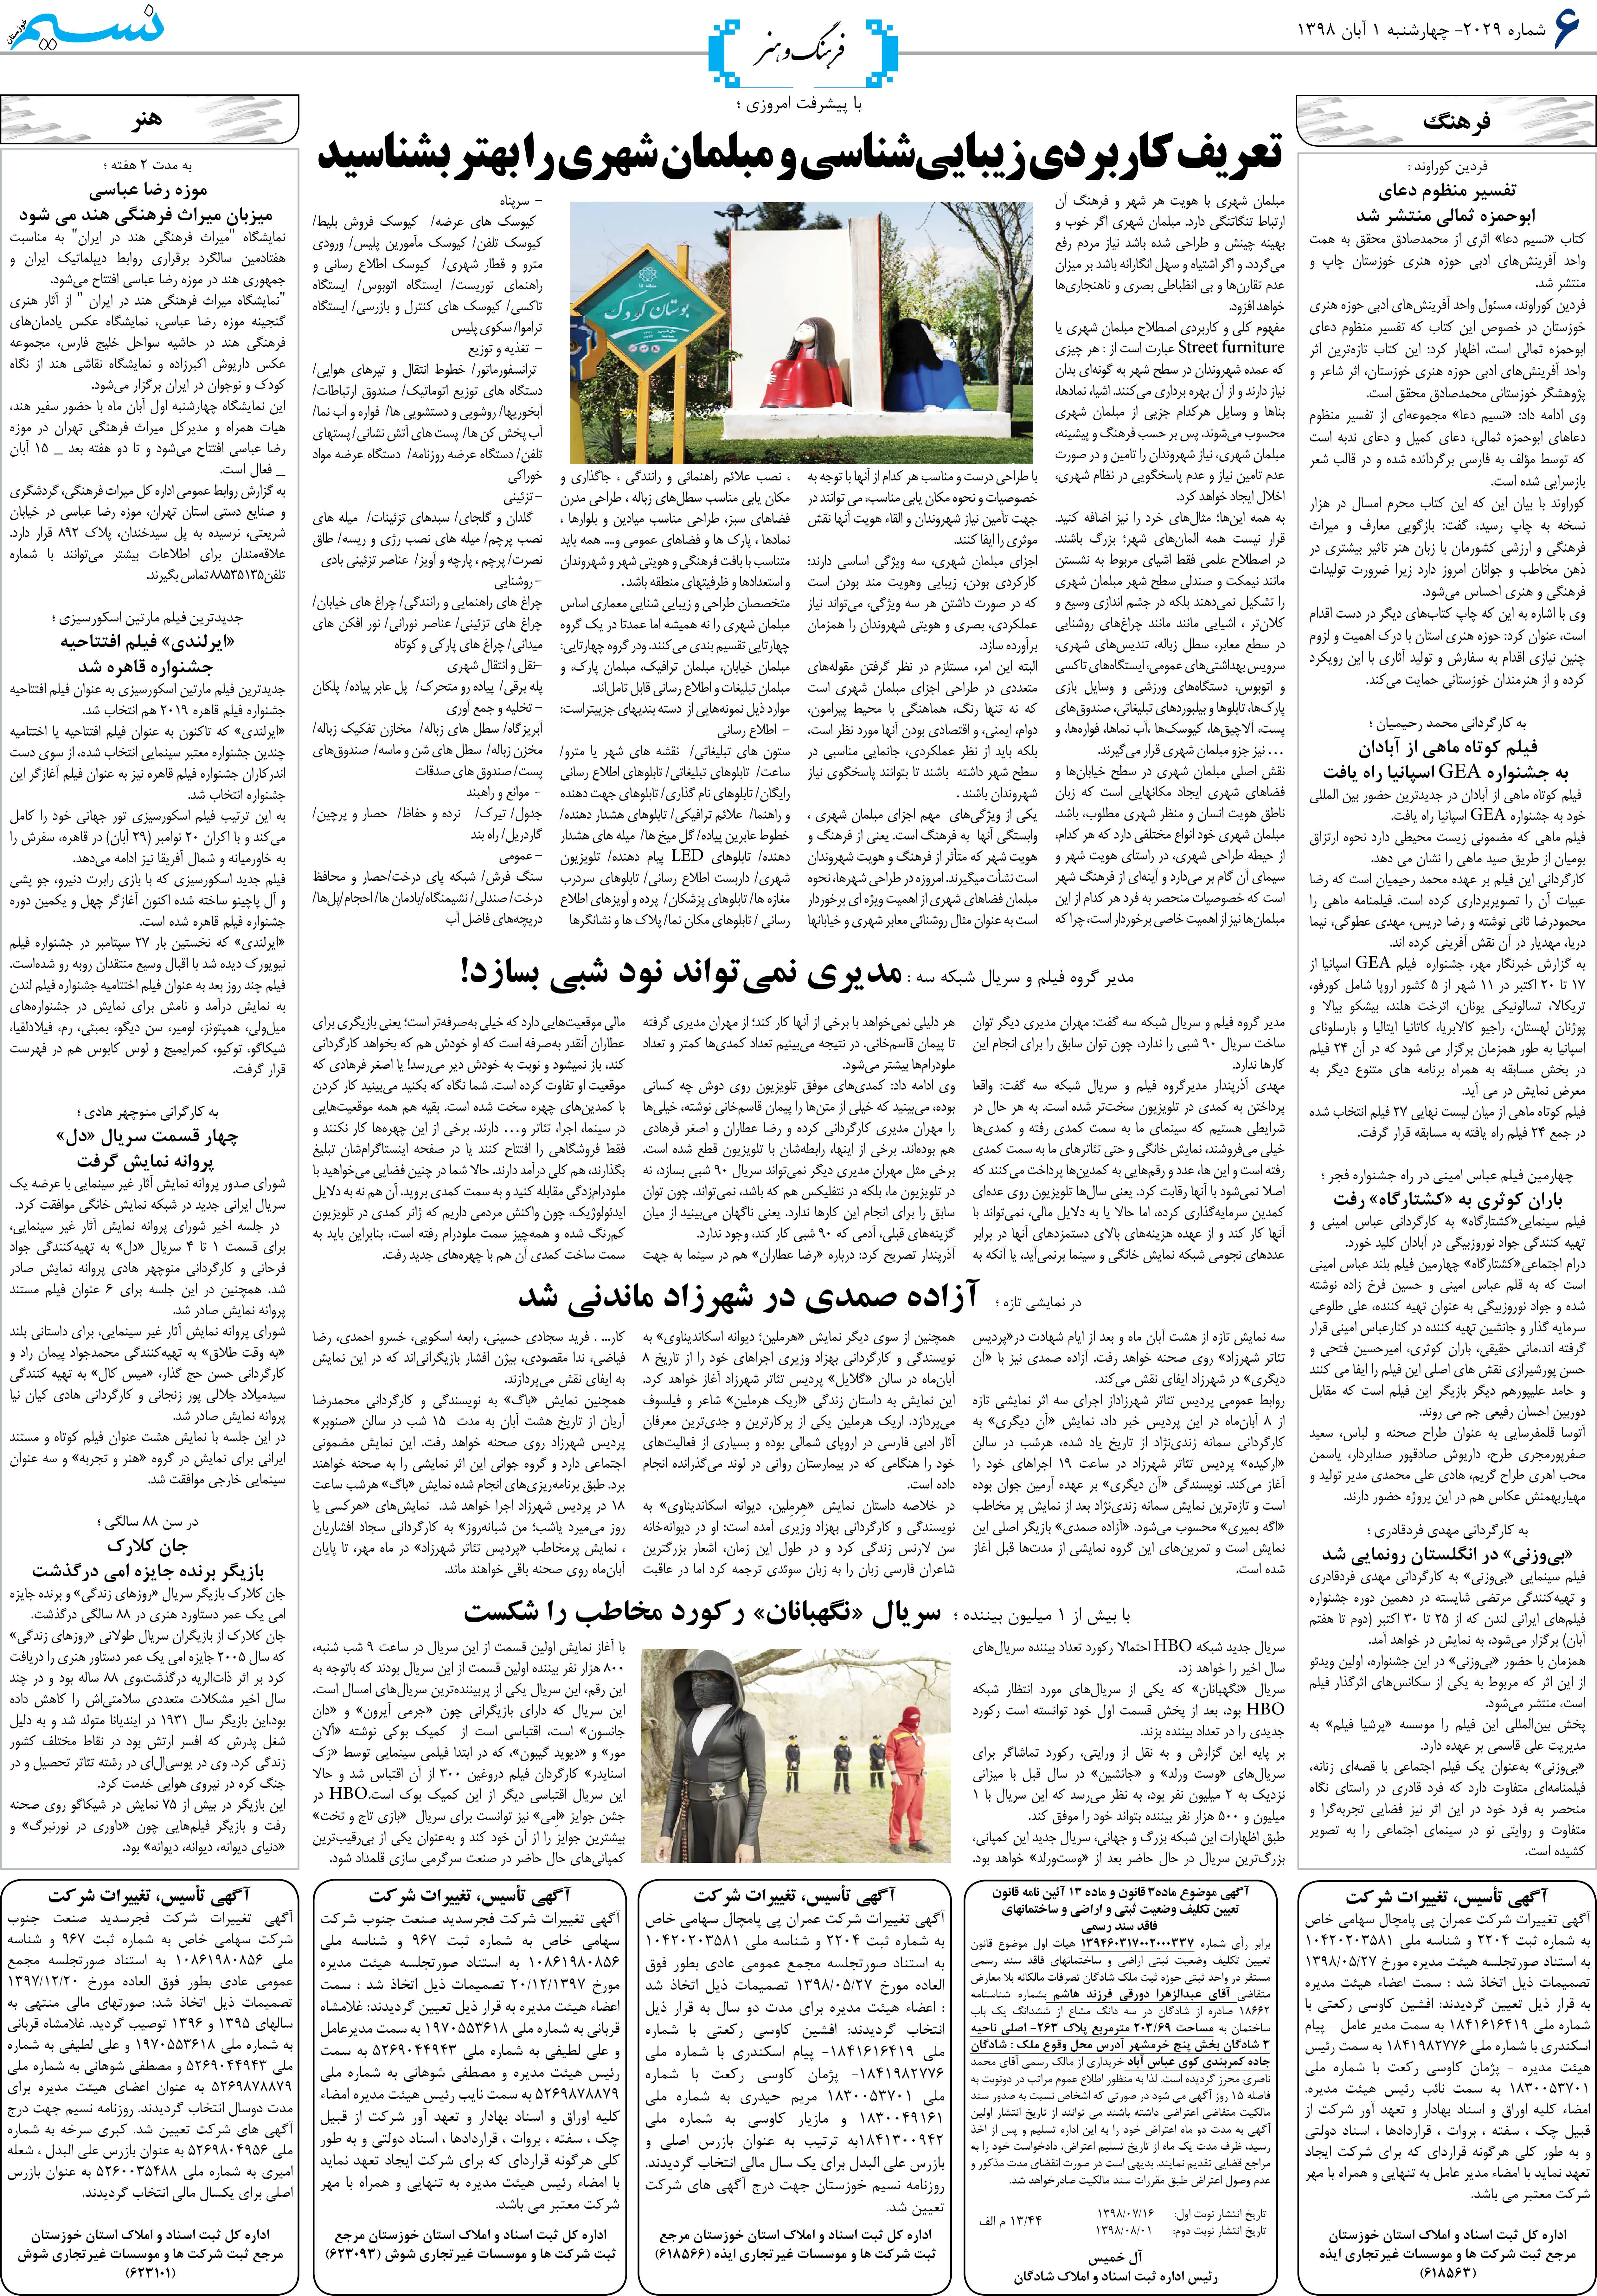 صفحه فرهنگ و هنر روزنامه نسیم شماره 2029